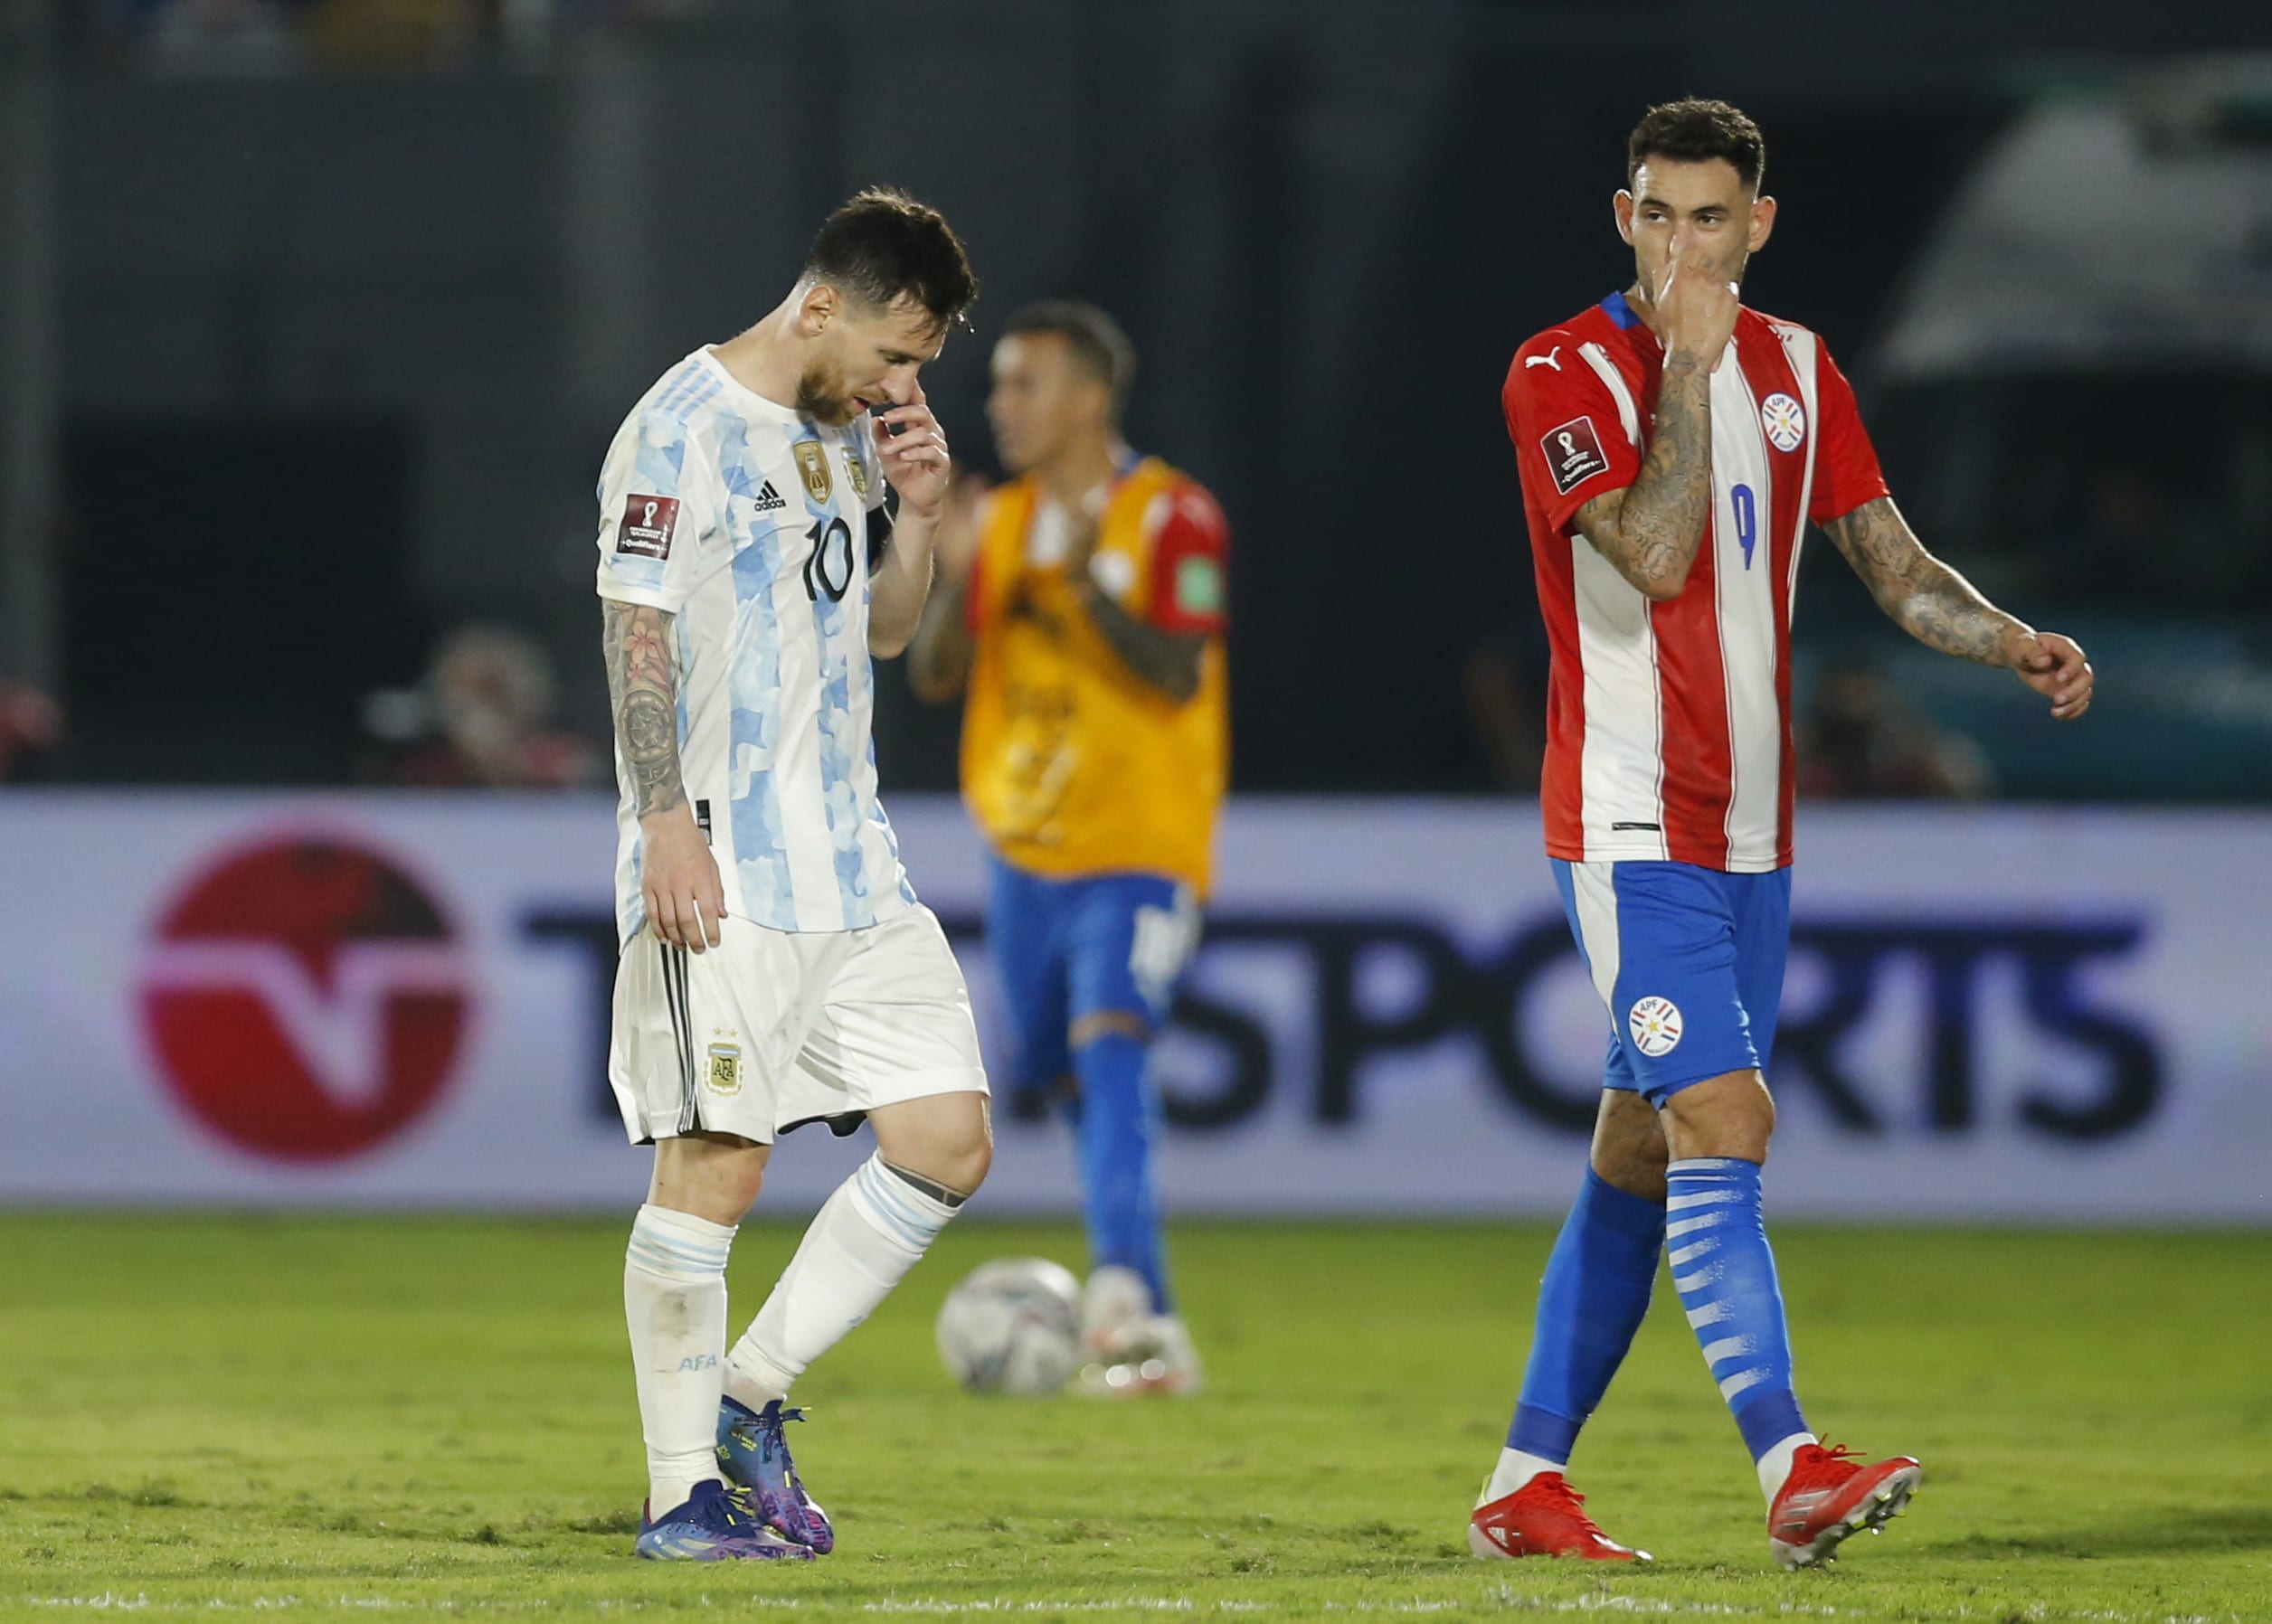 שחקן נבחרת ארגנטינה ליאונל מסי מאוכזב, לצידו שחקן נבחרת פרגוואי אנטוניו סנאבריה